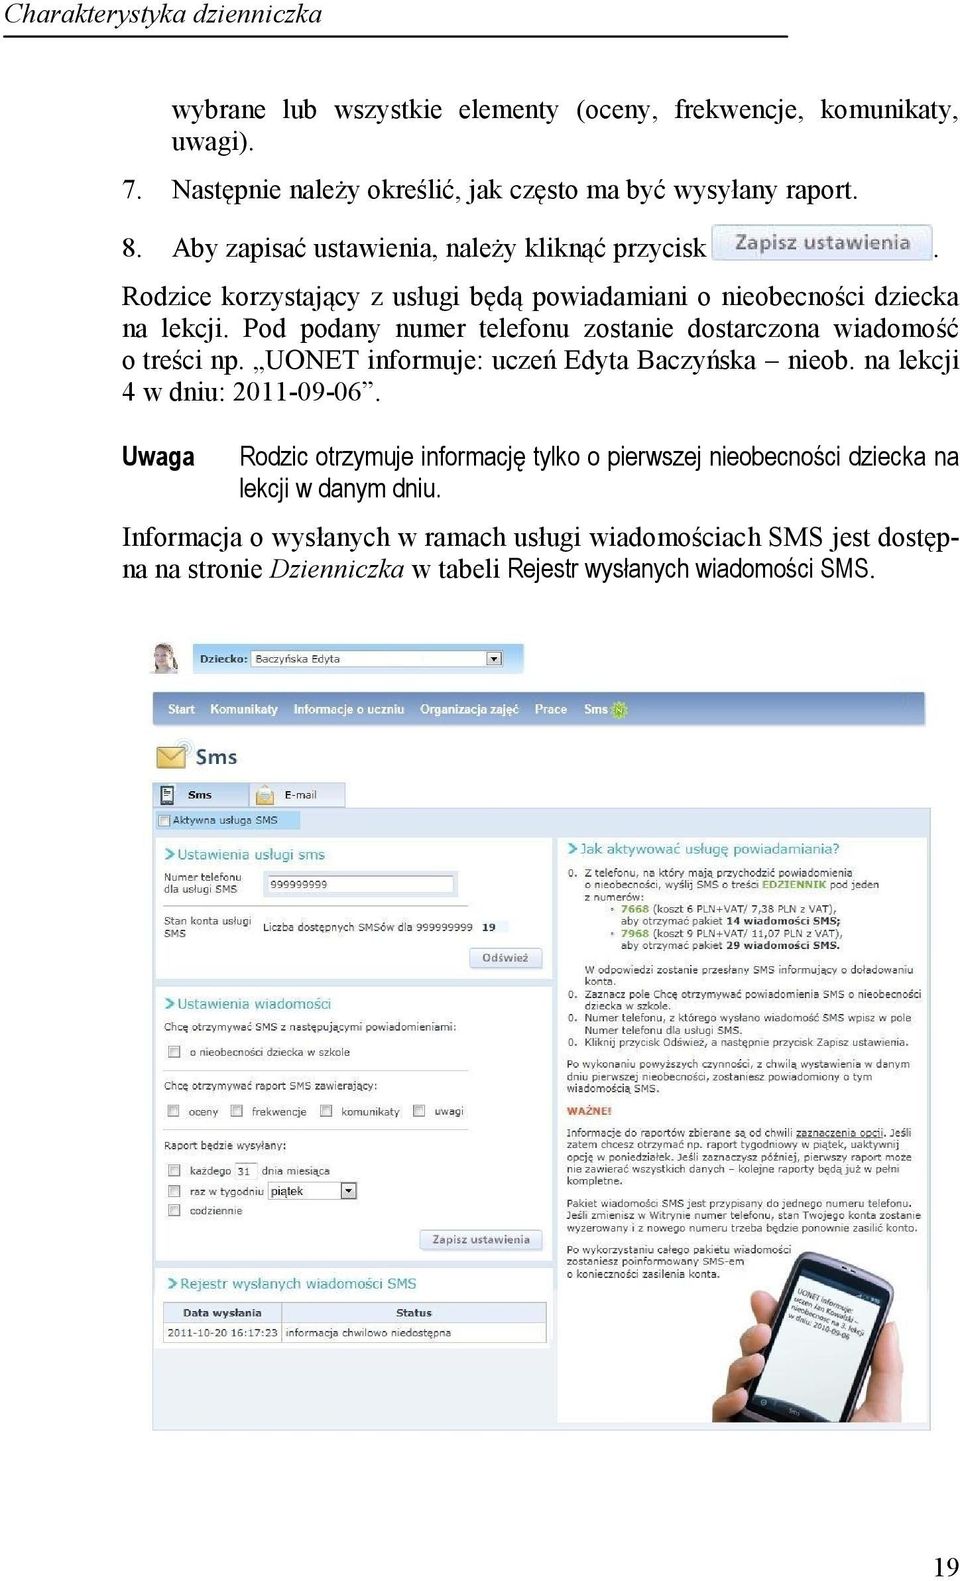 Pod podany numer telefonu zostanie dostarczona wiadomość o treści np. UONET informuje: uczeń Edyta Baczyńska nieob. na lekcji 4 w dniu: 2011-09-06.